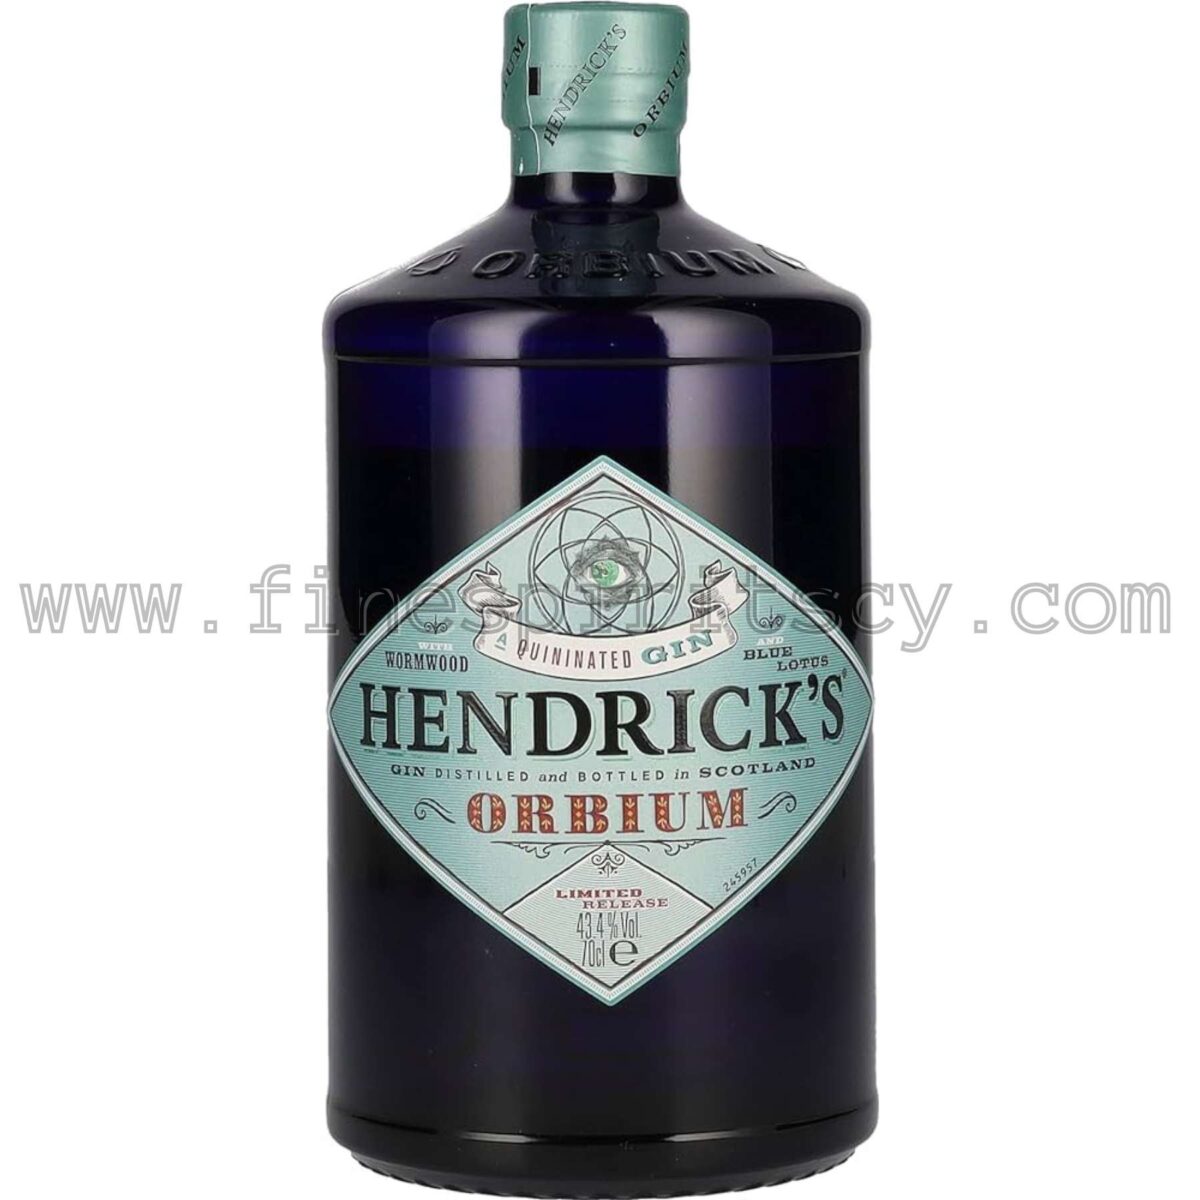 Hendricks Orbium Gin Cyprus Price Order online 700ml 70cl 0.7L Limited Edition